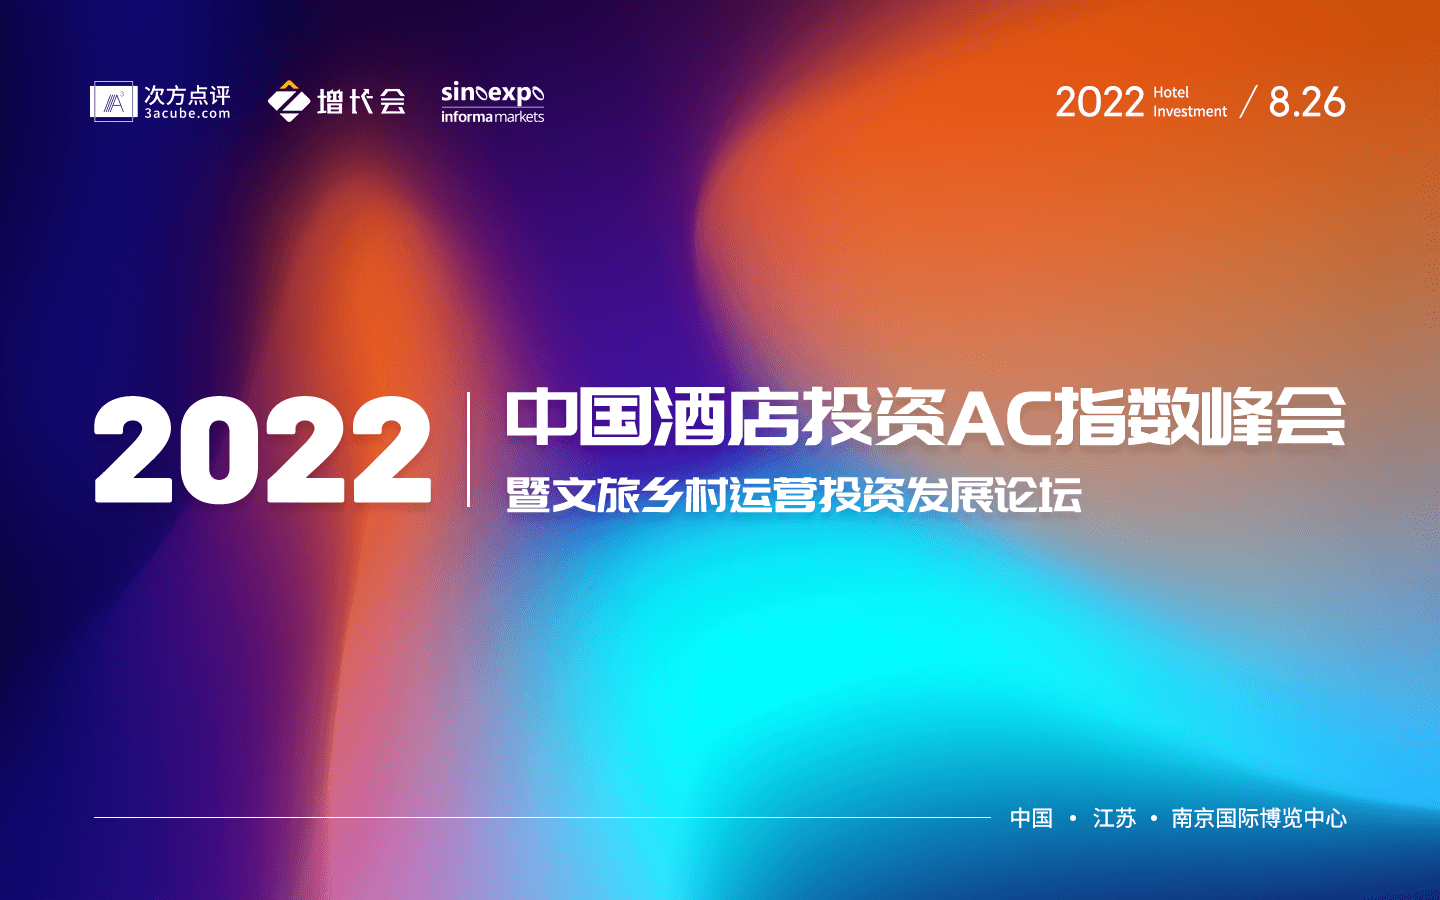 2022中國酒店投資AC指數峰會暨文旅鄉村運營投資發展論壇報名表